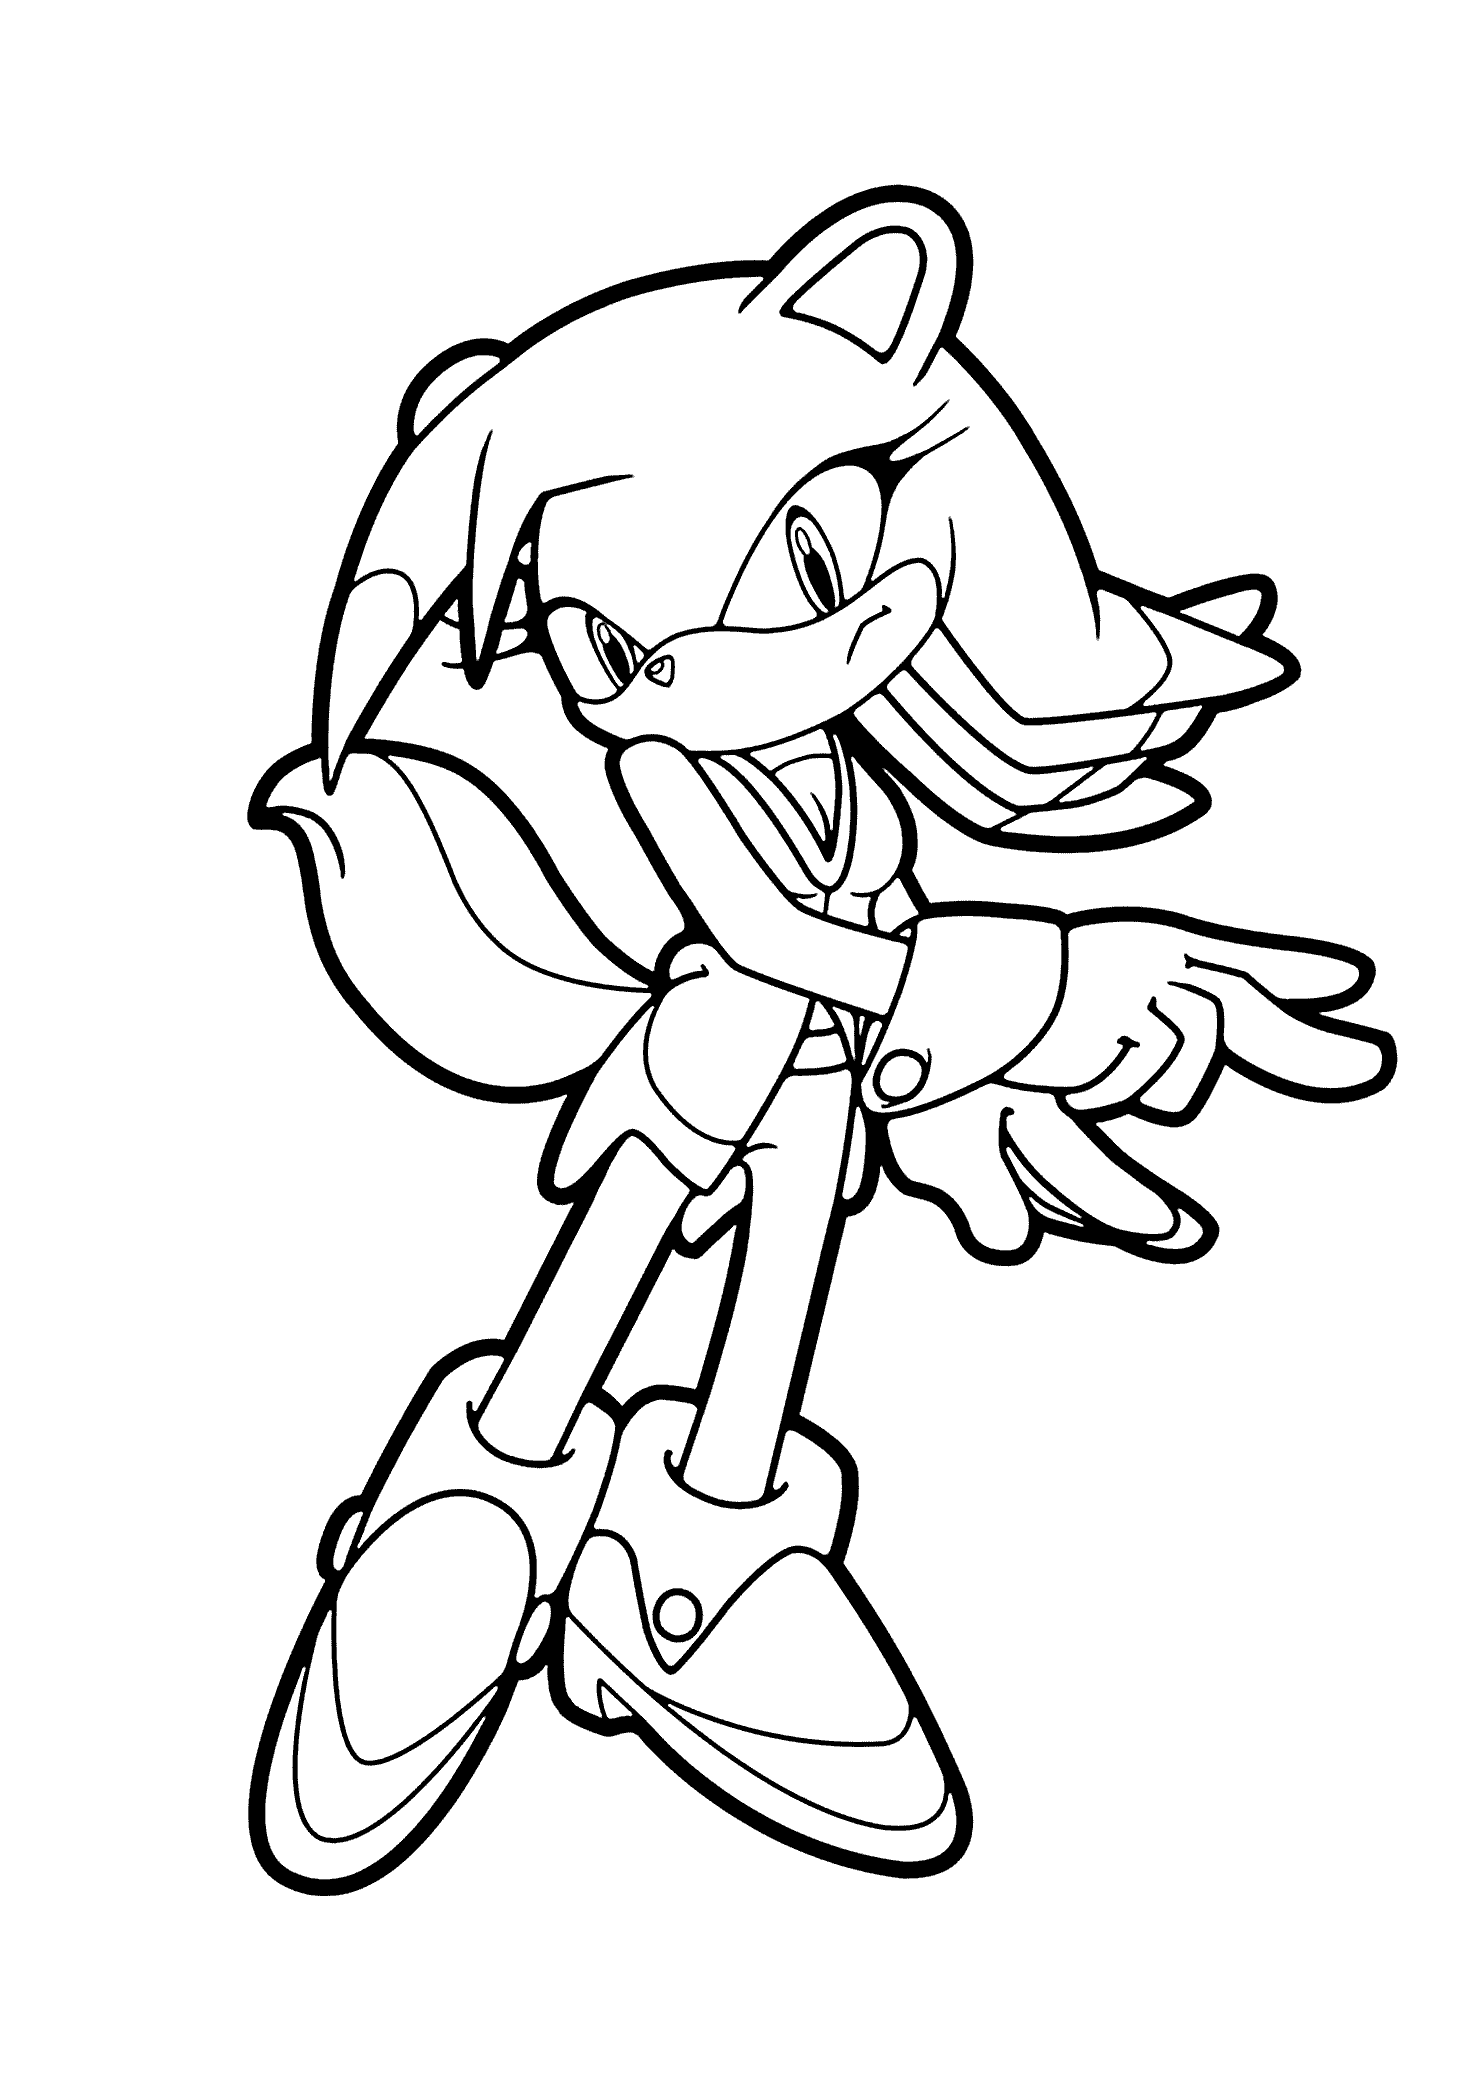 Dibujo imprimible de Sonic the Hedgehog para colorear